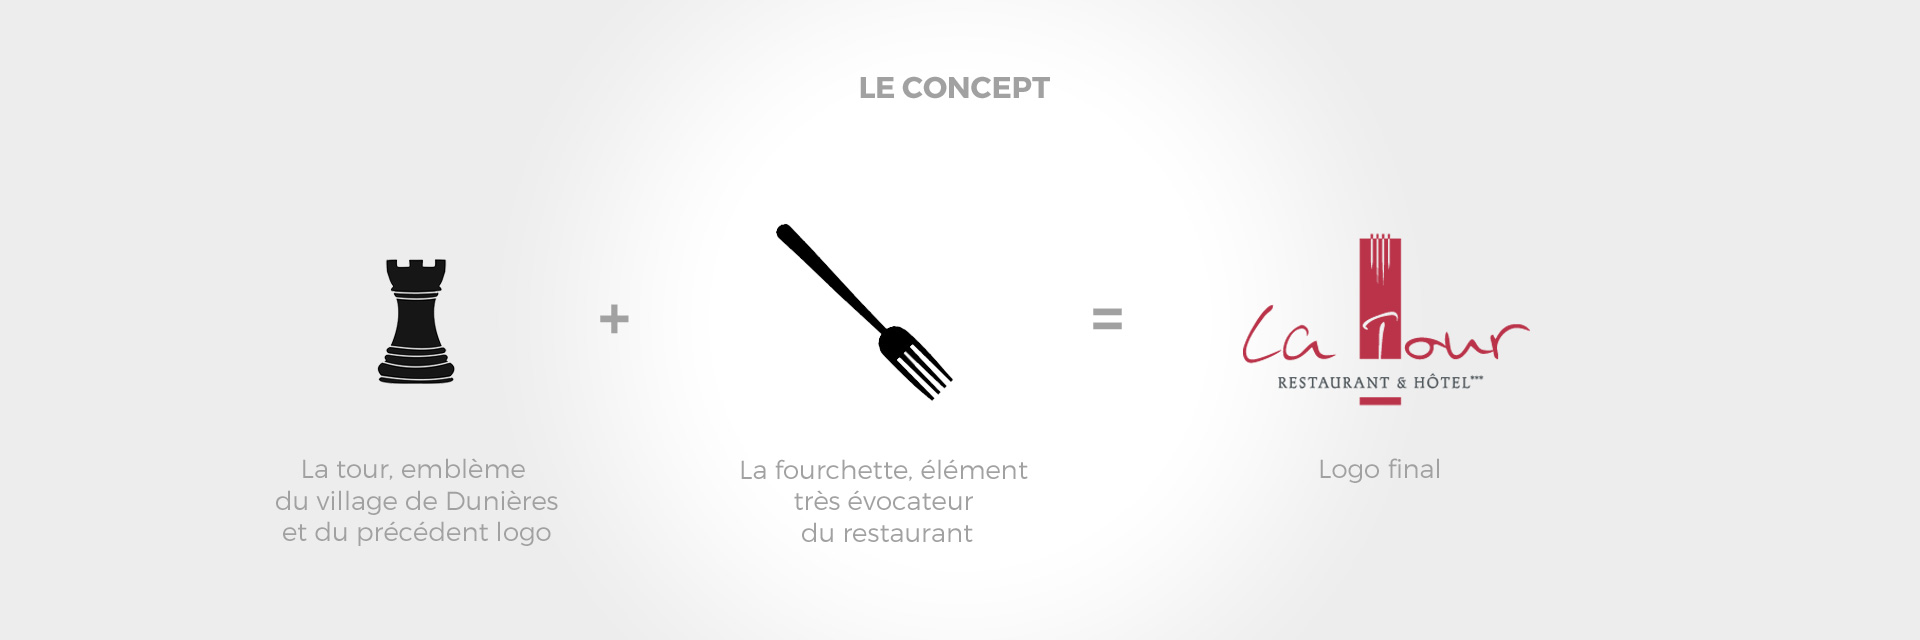 Concept imaginé par l'agence studio N°3 pour le logo restaurant La Tour